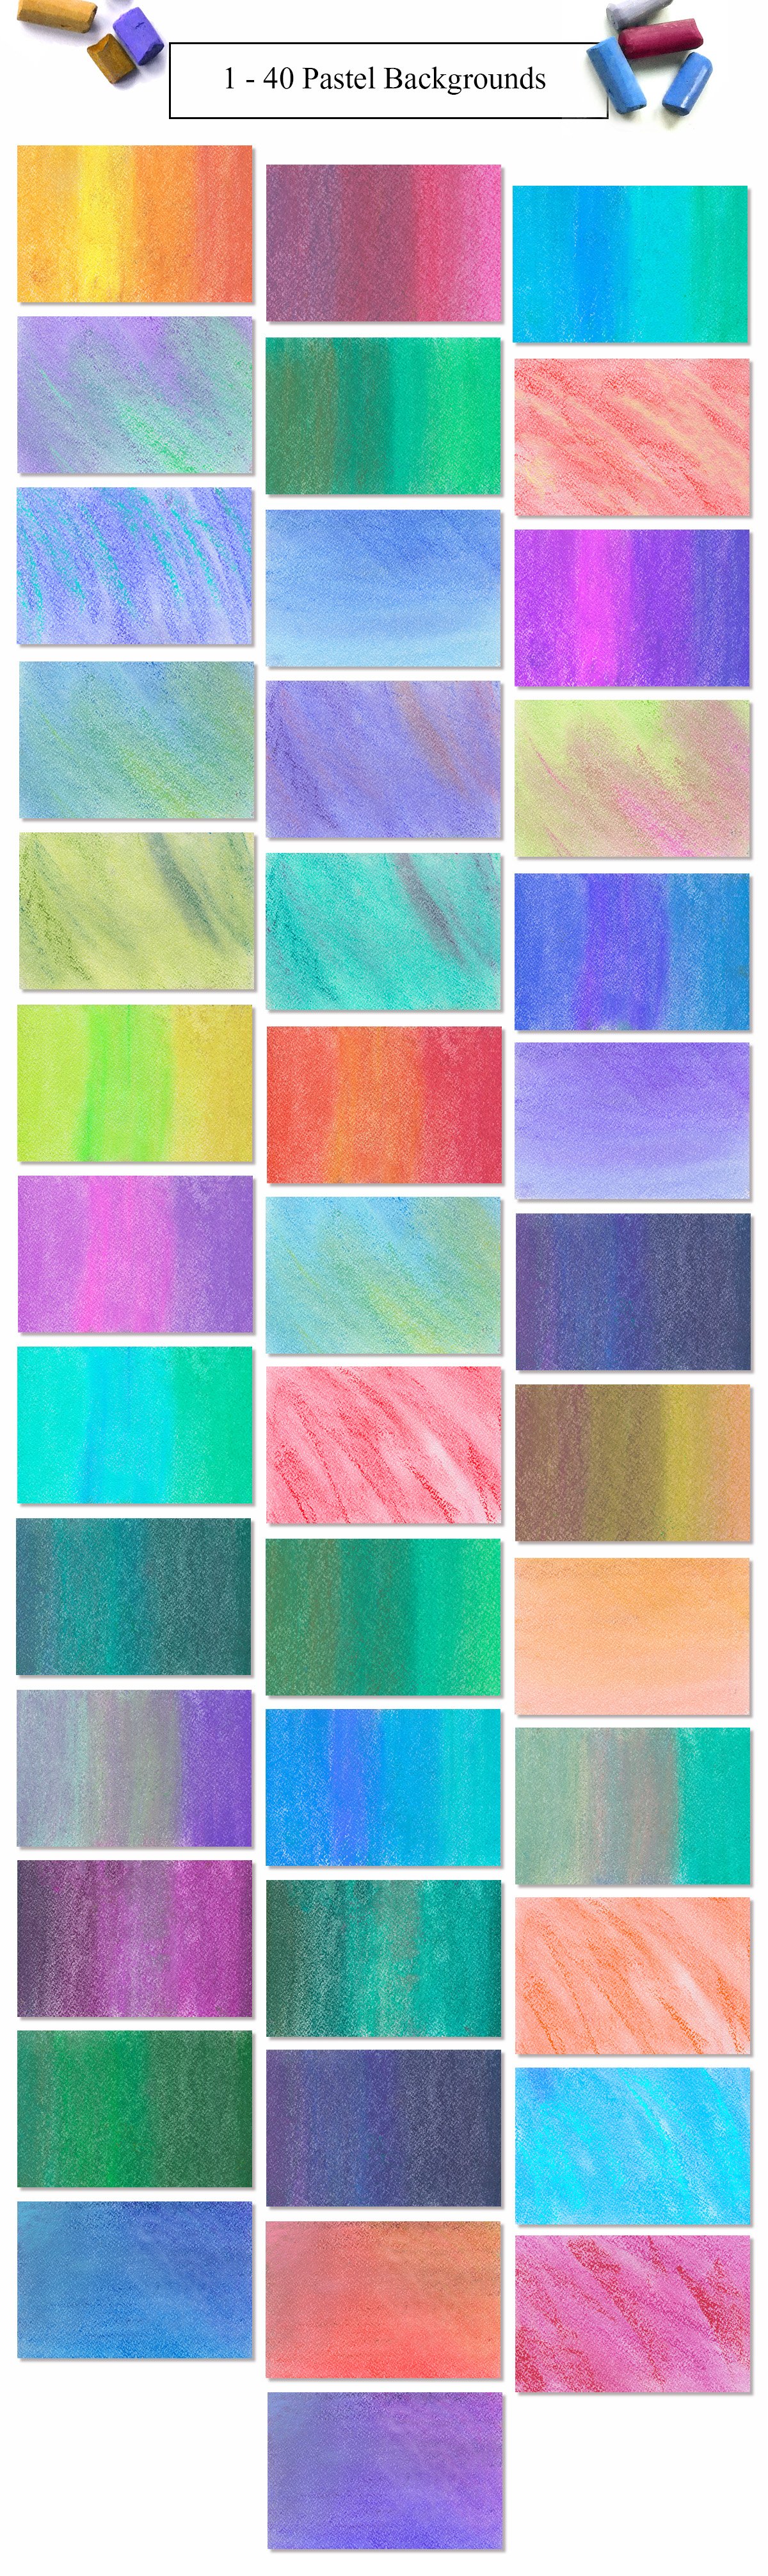 1333 复古彩色粉笔背景素材80 Pastel Backgrounds